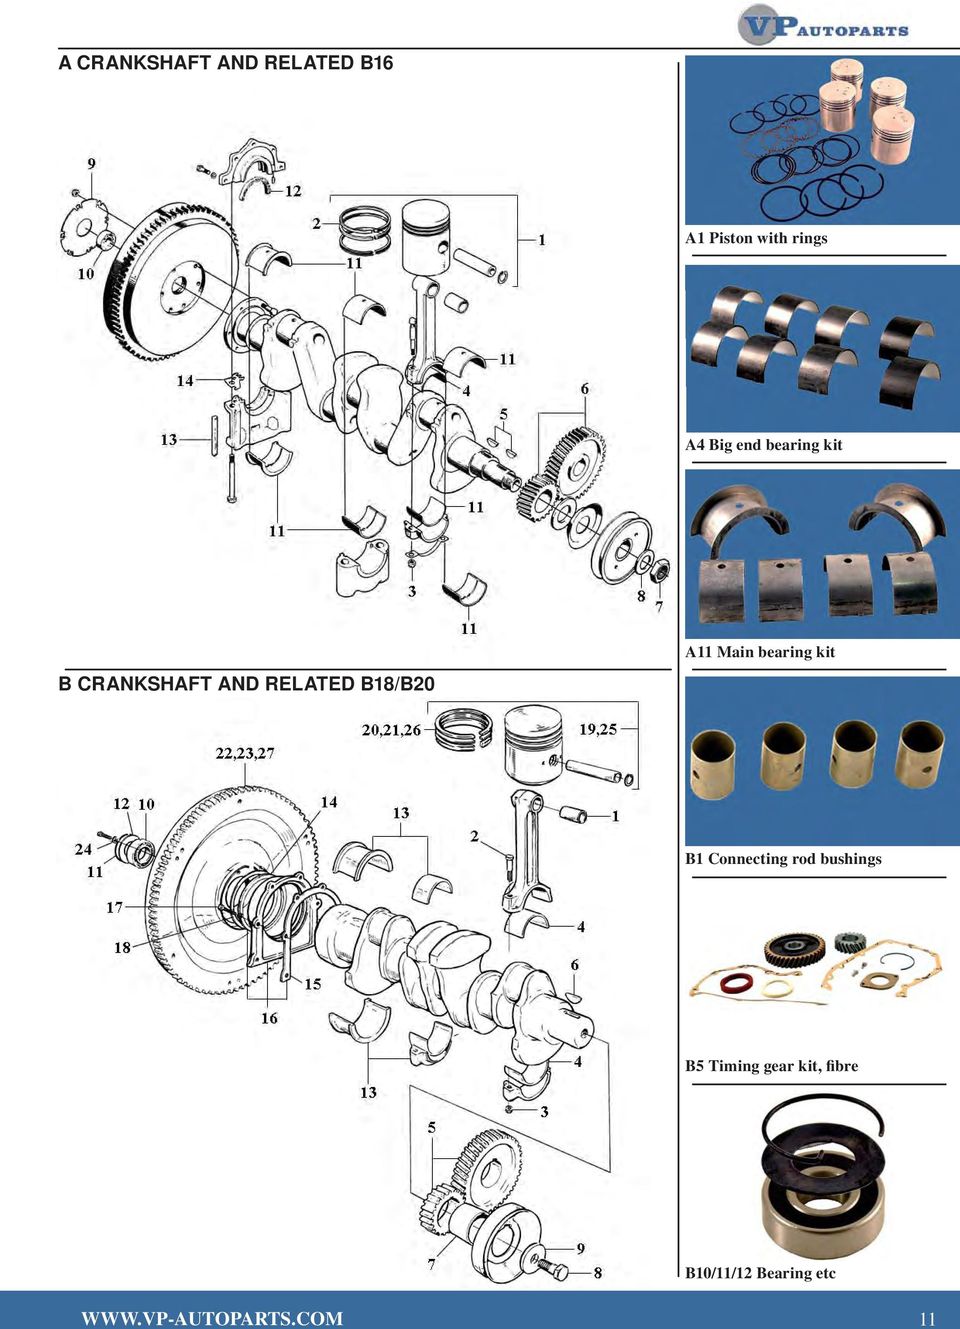 bearing kit A11 Main bearing kit B1 Connecting rod bushings